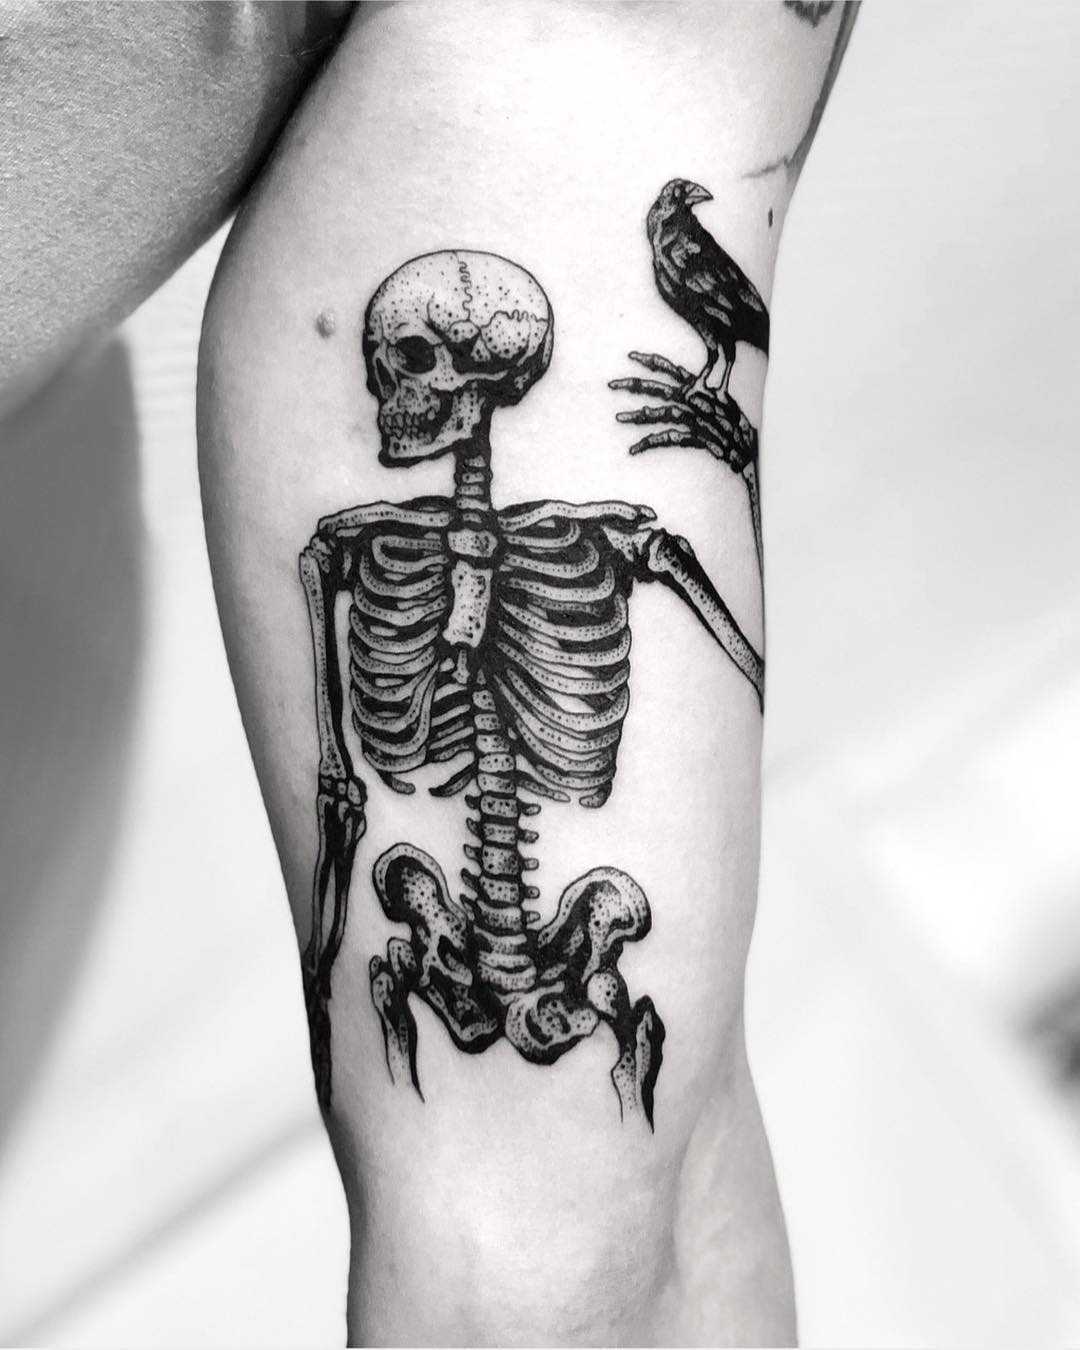 Skeleton tattoo ideas